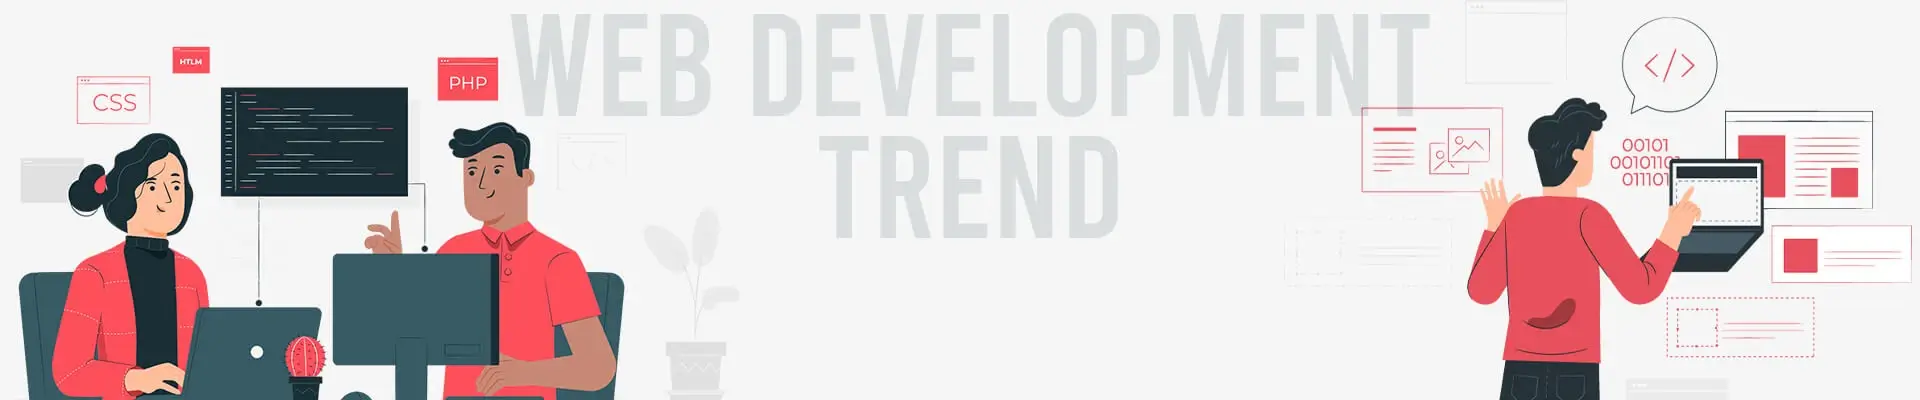 top 6 web development trend in 2020